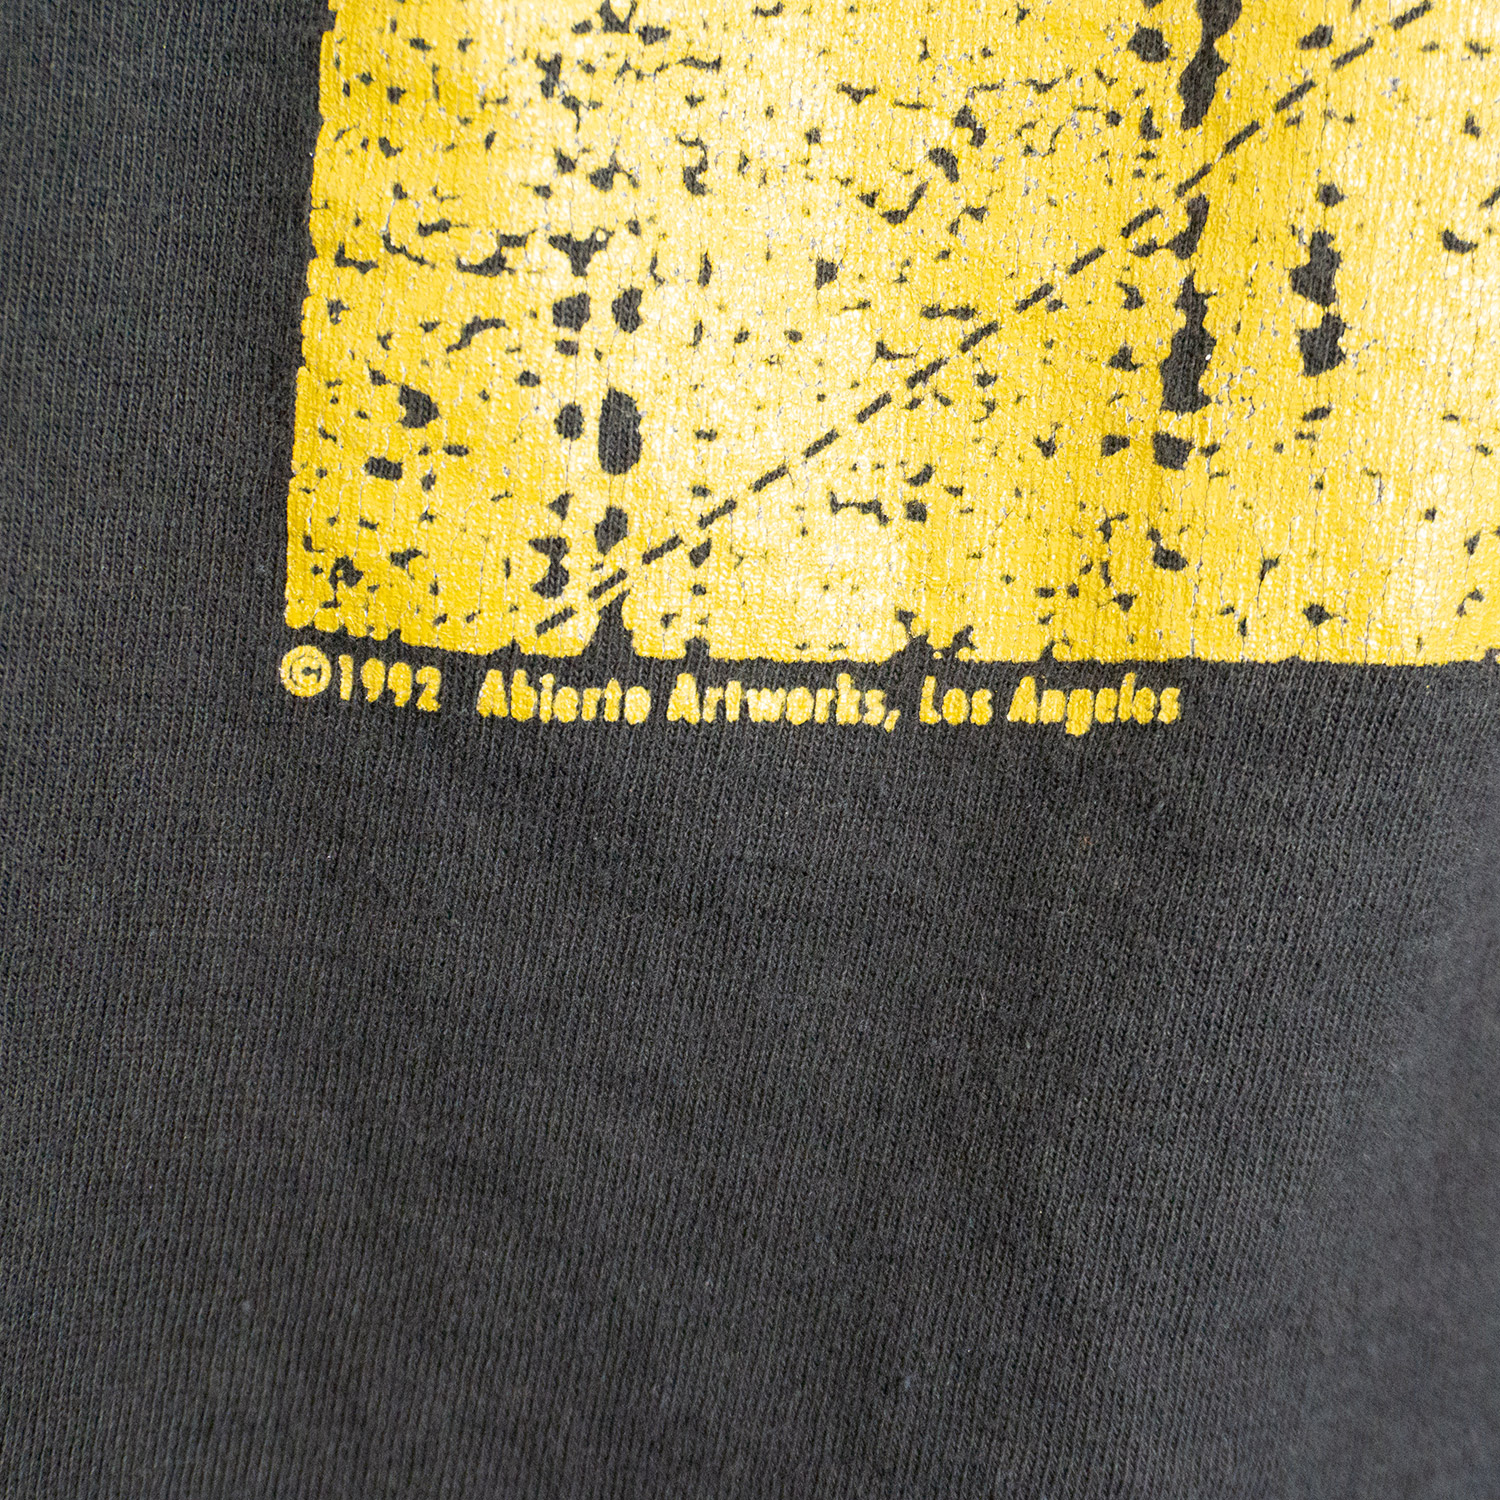 ACLU T-shirt, Copyright Close-up